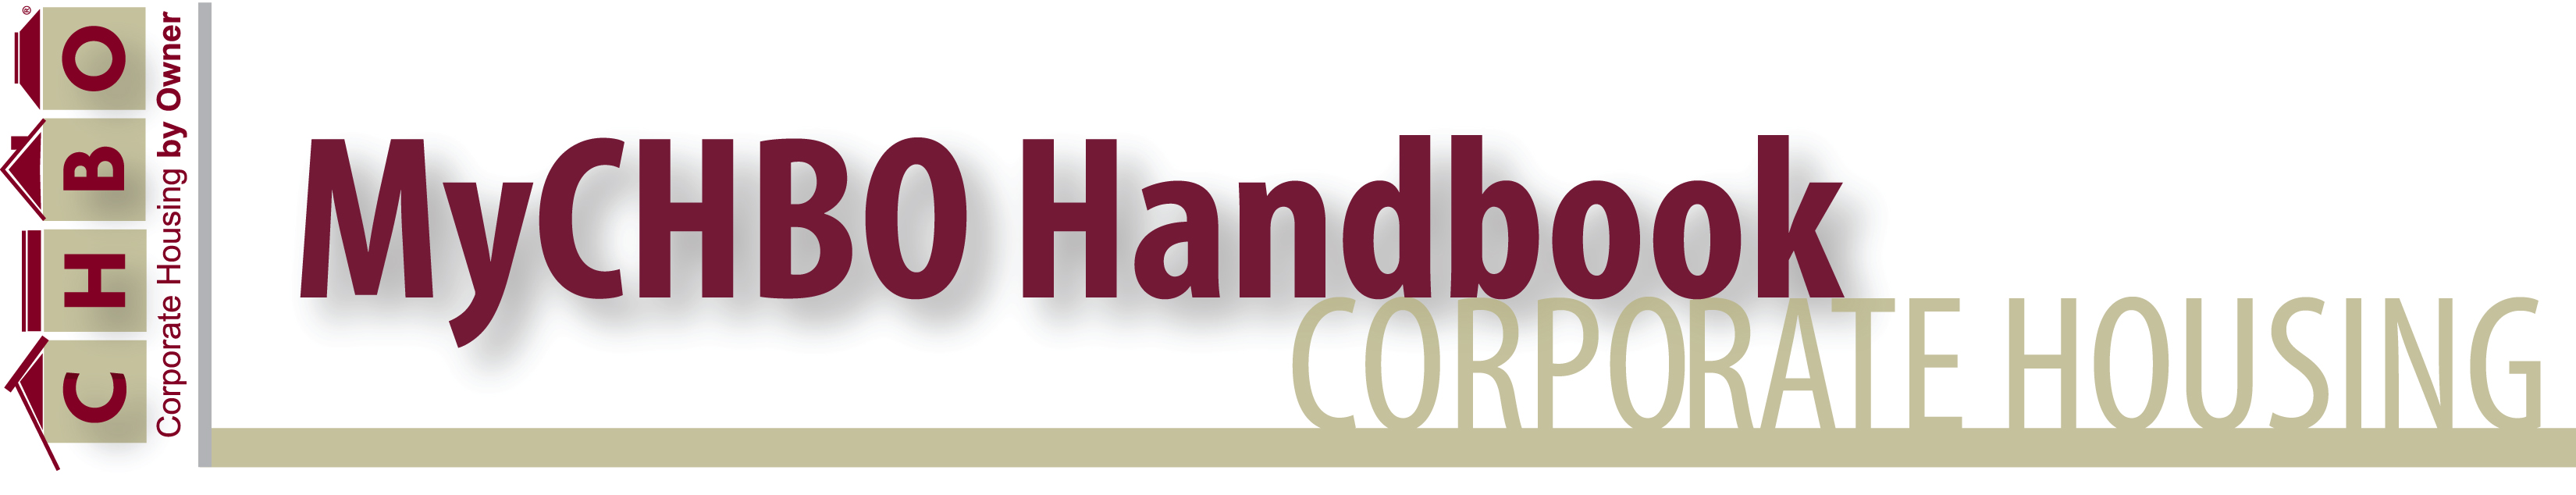 Corporate Housing Handbook